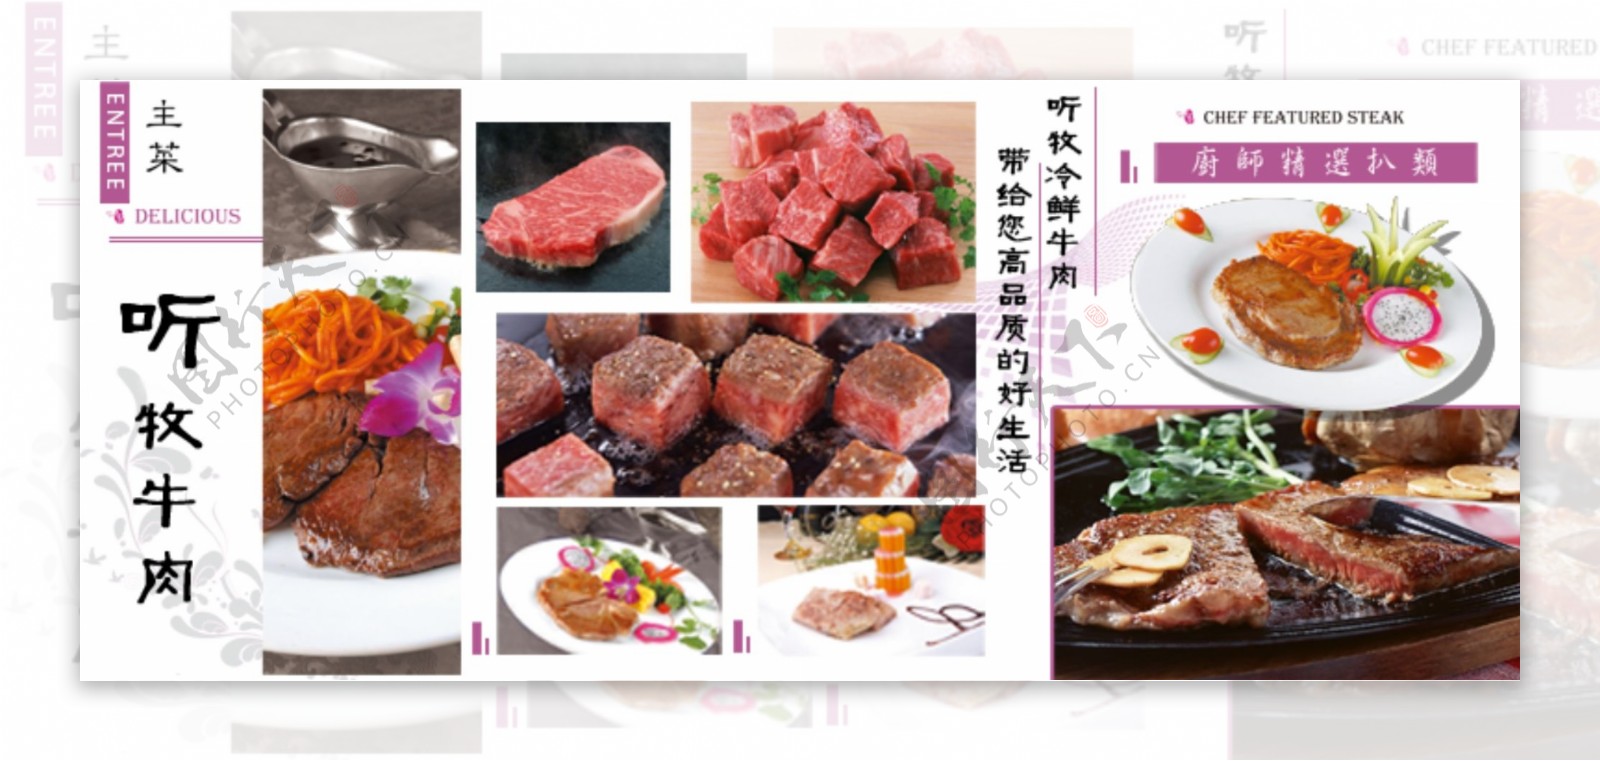 牛肉产品展示广告图PSD